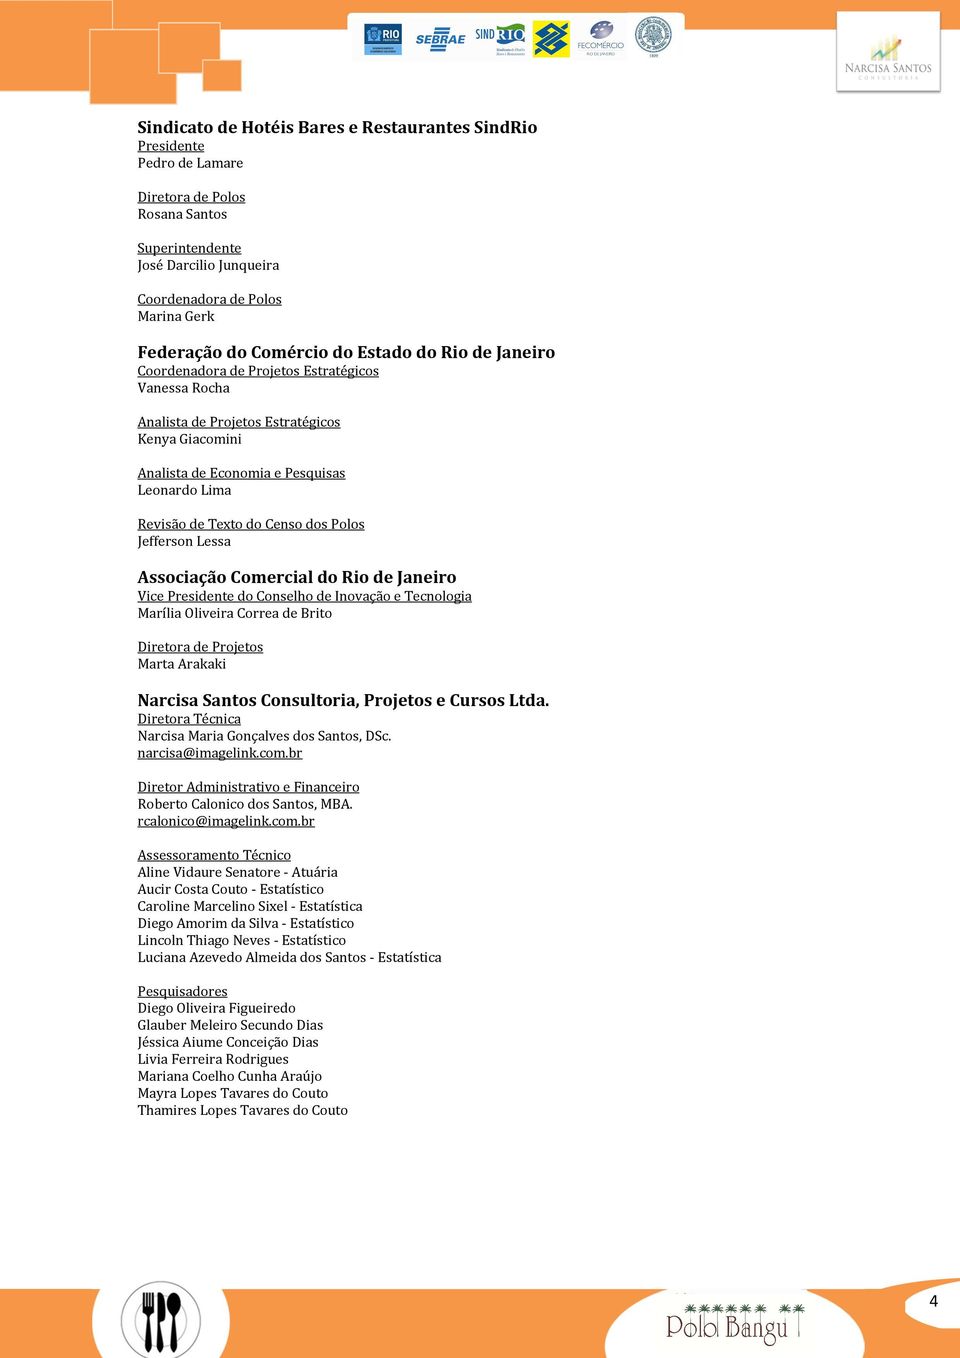 Texto do Censo dos Polos Jefferson Lessa Associação Comercial do Rio de Janeiro Vice Presidente do Conselho de Inovação e Tecnologia Marília Oliveira Correa de Brito Diretora de Projetos Marta